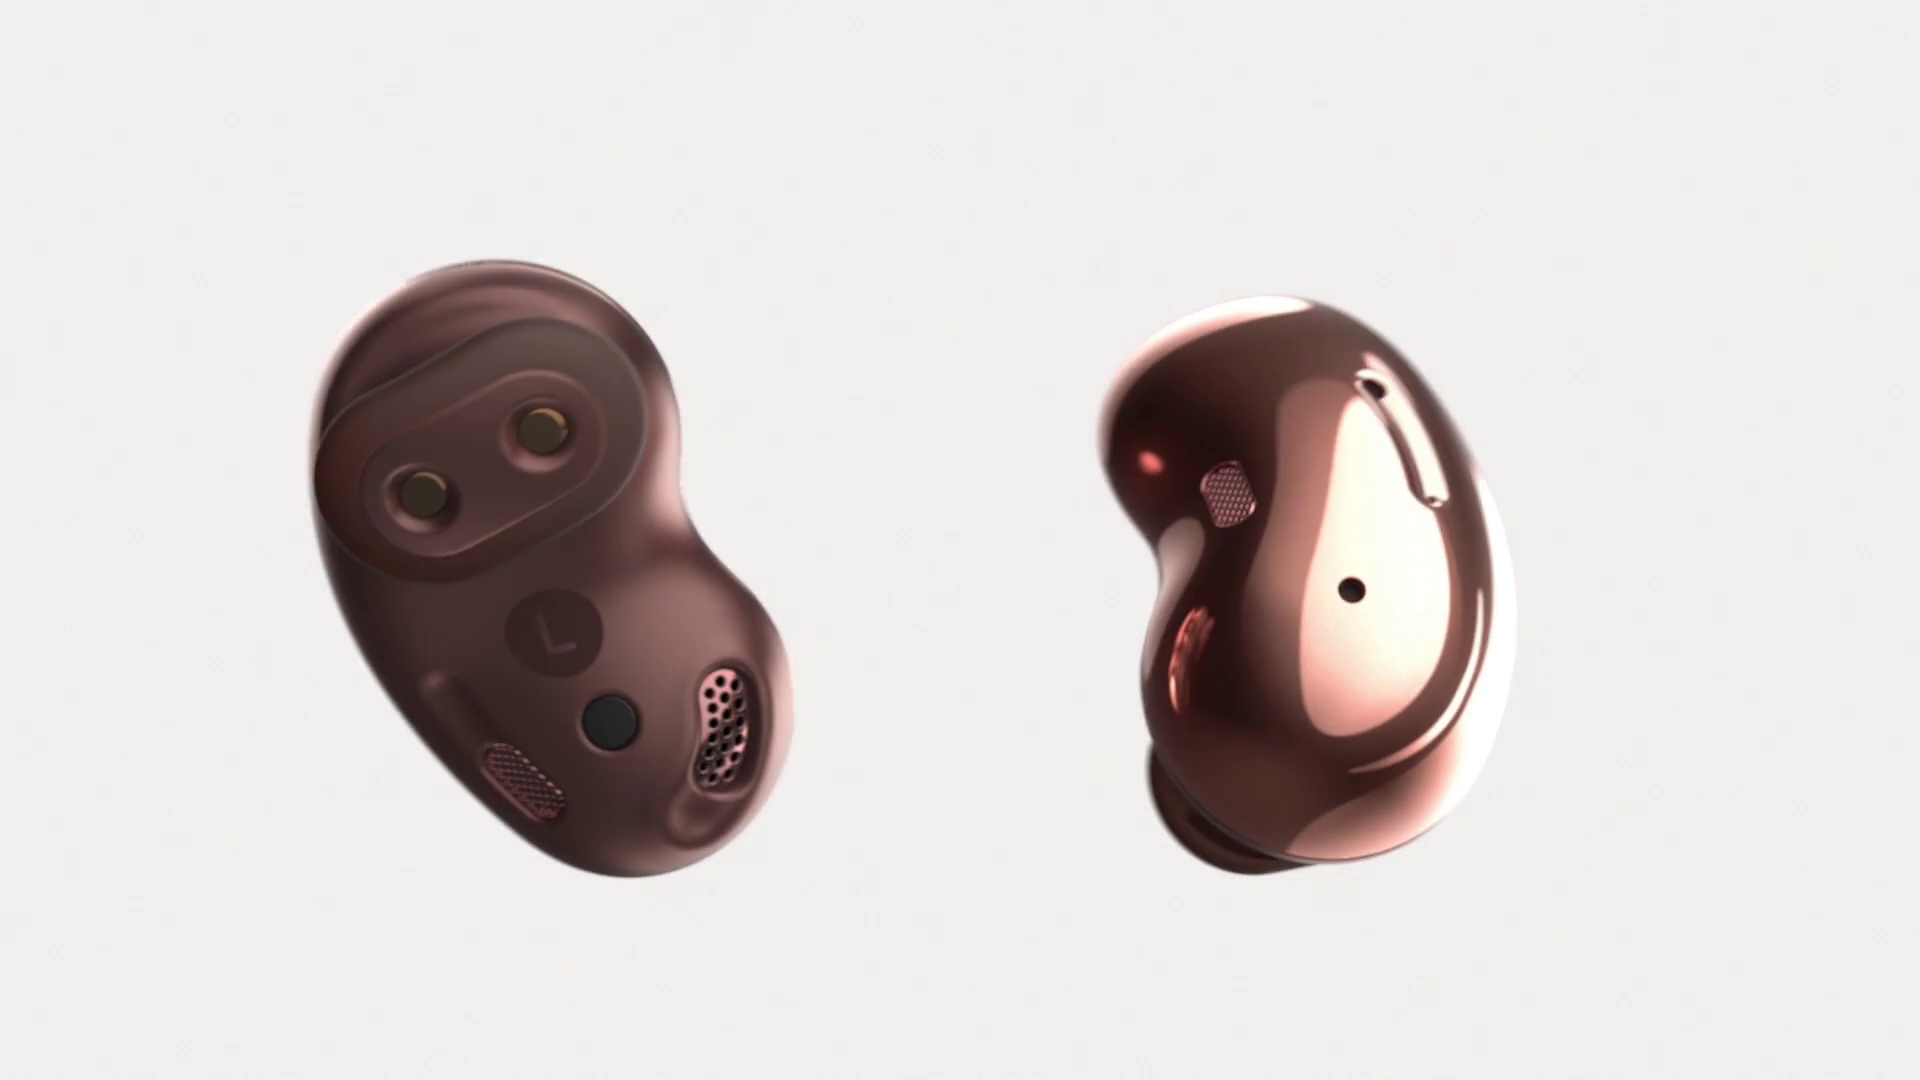 Lộ ảnh tai nghe không dây với thiết kế hình hạt đậu độc đáo của Samsung